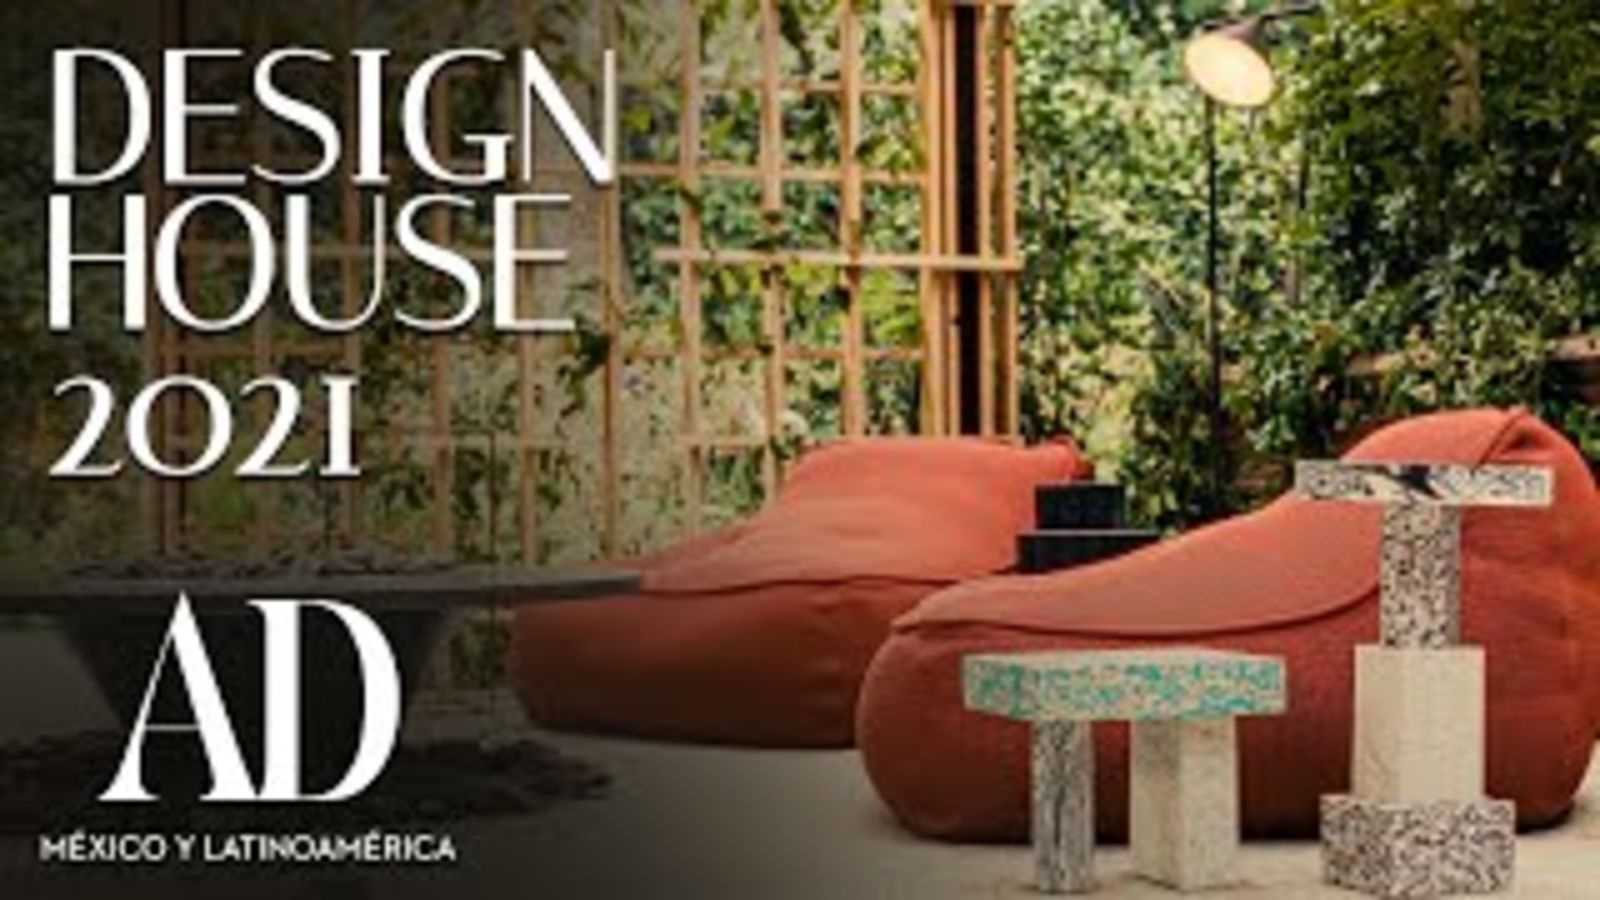 Design Week 2021 y la remodelación de una casa habitación | AD México y Latinoamérica